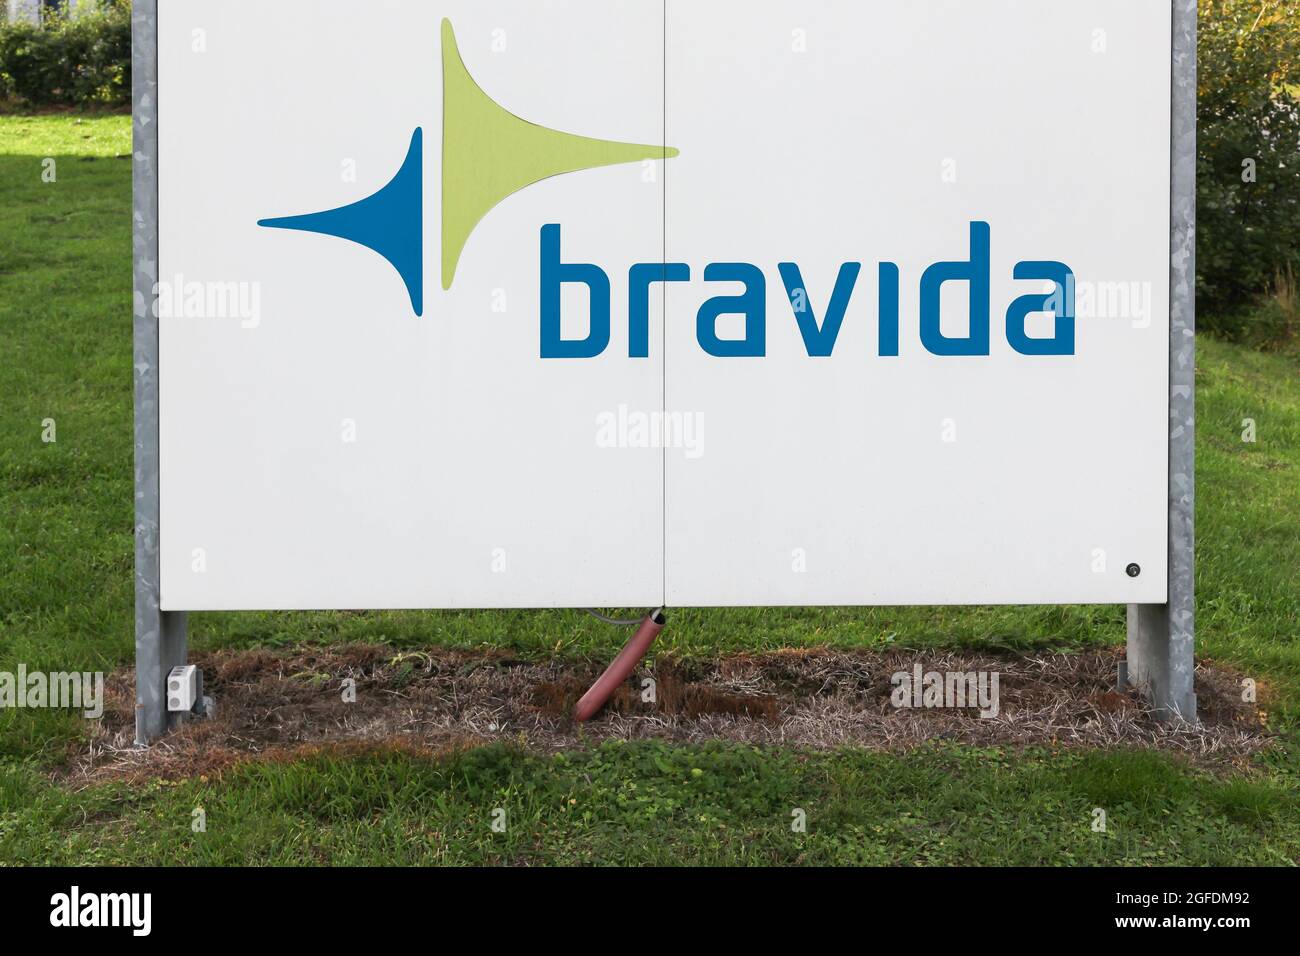 Tilst, Danemark - 7 octobre 2018 : Bravida est une entreprise scandinave d'installation et de service dans les domaines de l'électricité, de la plomberie et de la ventilation Banque D'Images